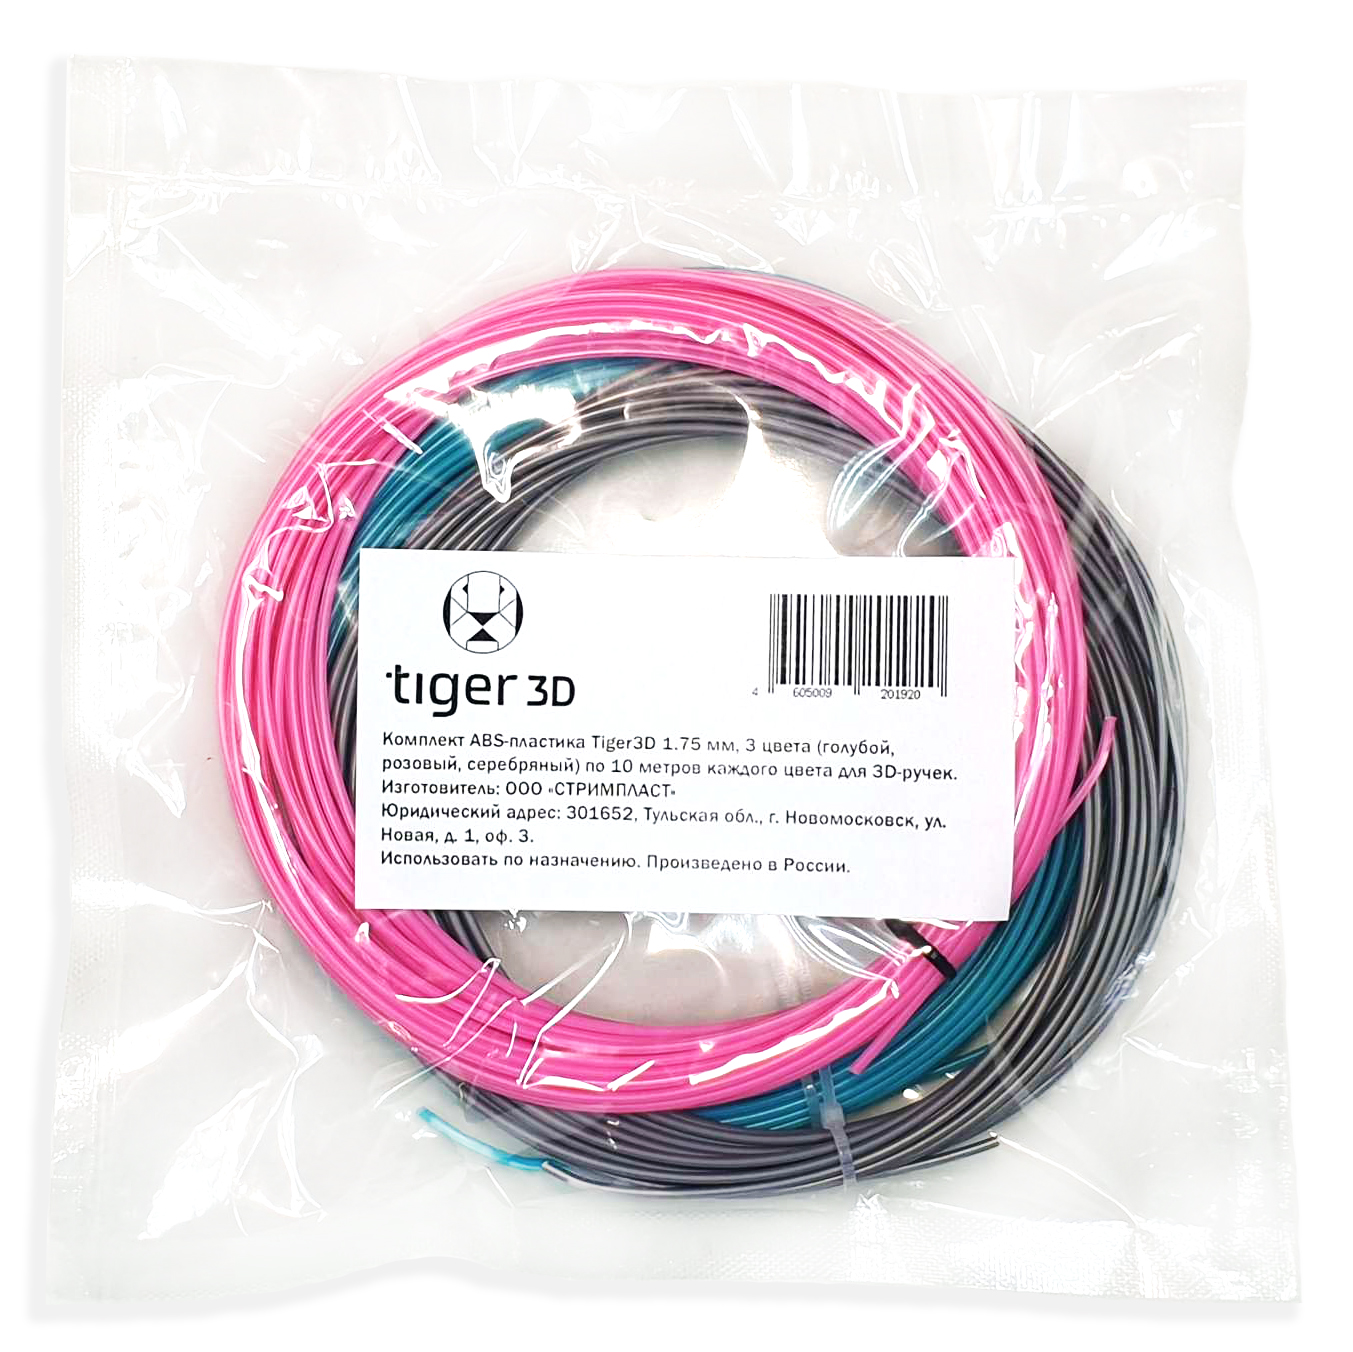 Комплект ABS-пластика Tiger3D 1.75 мм для 3D ручек (голубой, розовый, серебряный), по 10 м каждого